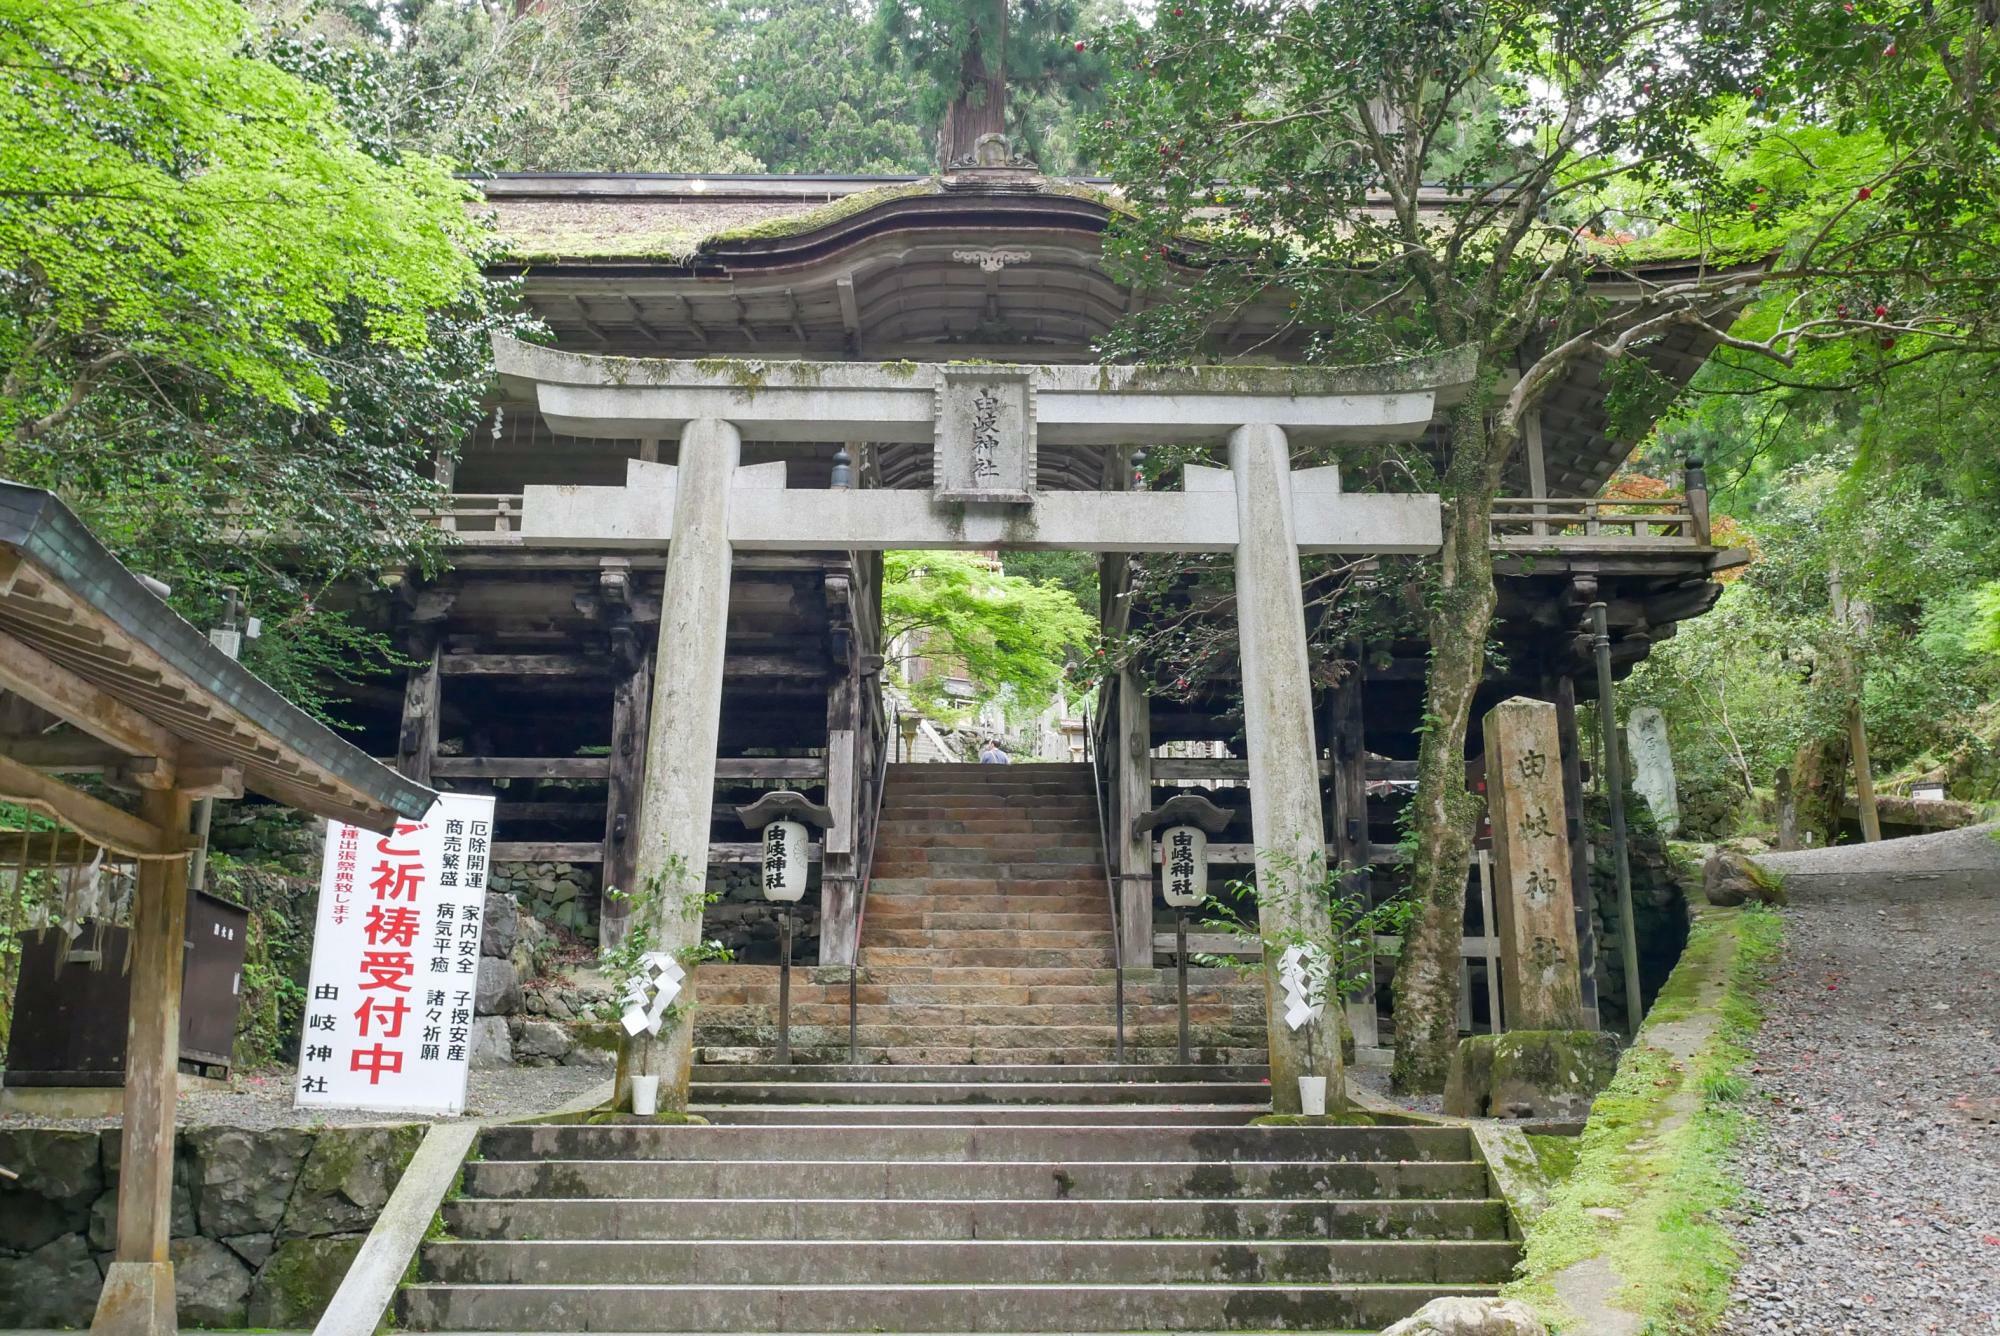 九十九折山道にある「由岐神社」。「大杉さん」の愛称で親しまれている御神木が見守っています。